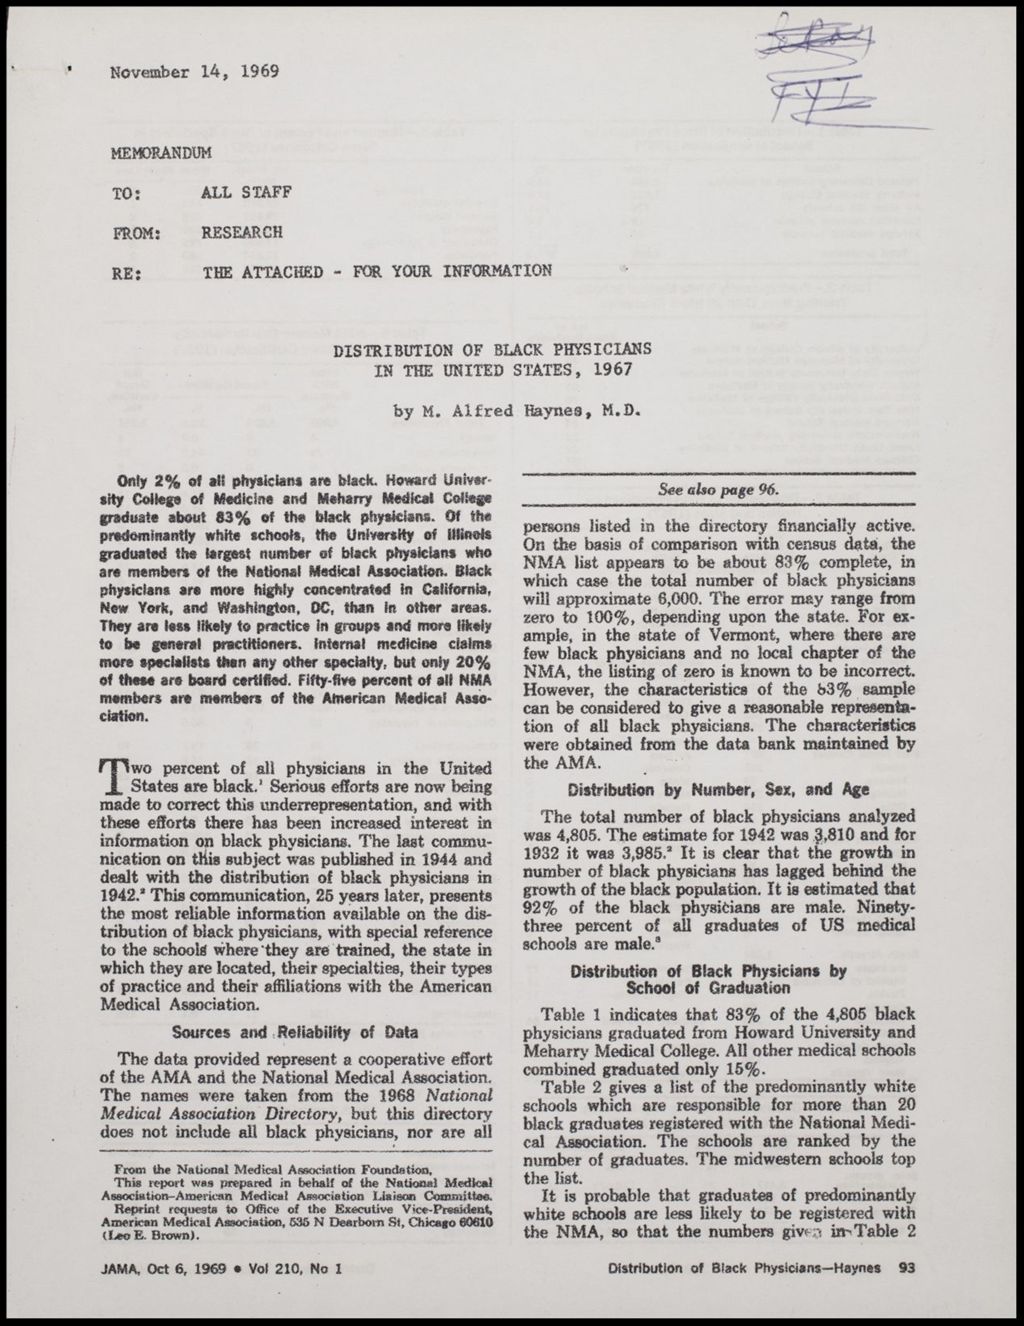 Dangers of Lead Poisoning, 1968 (Folder III-187)